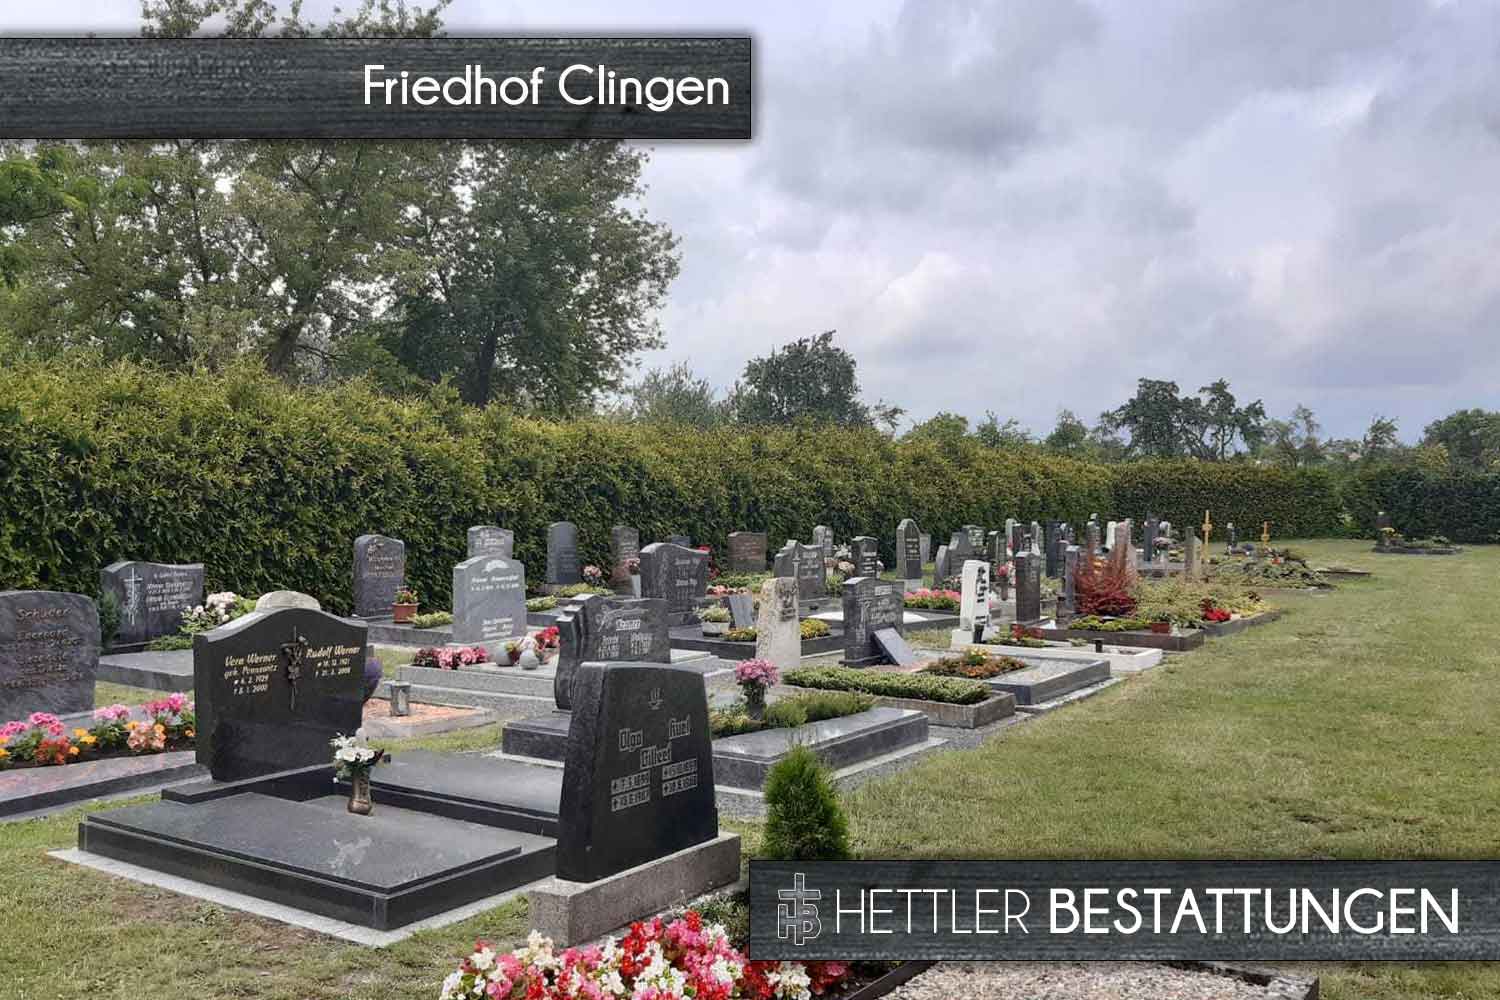 Friedhof in Clingen. Ihr Ort des Abschieds mit Hettler Bestattungen.